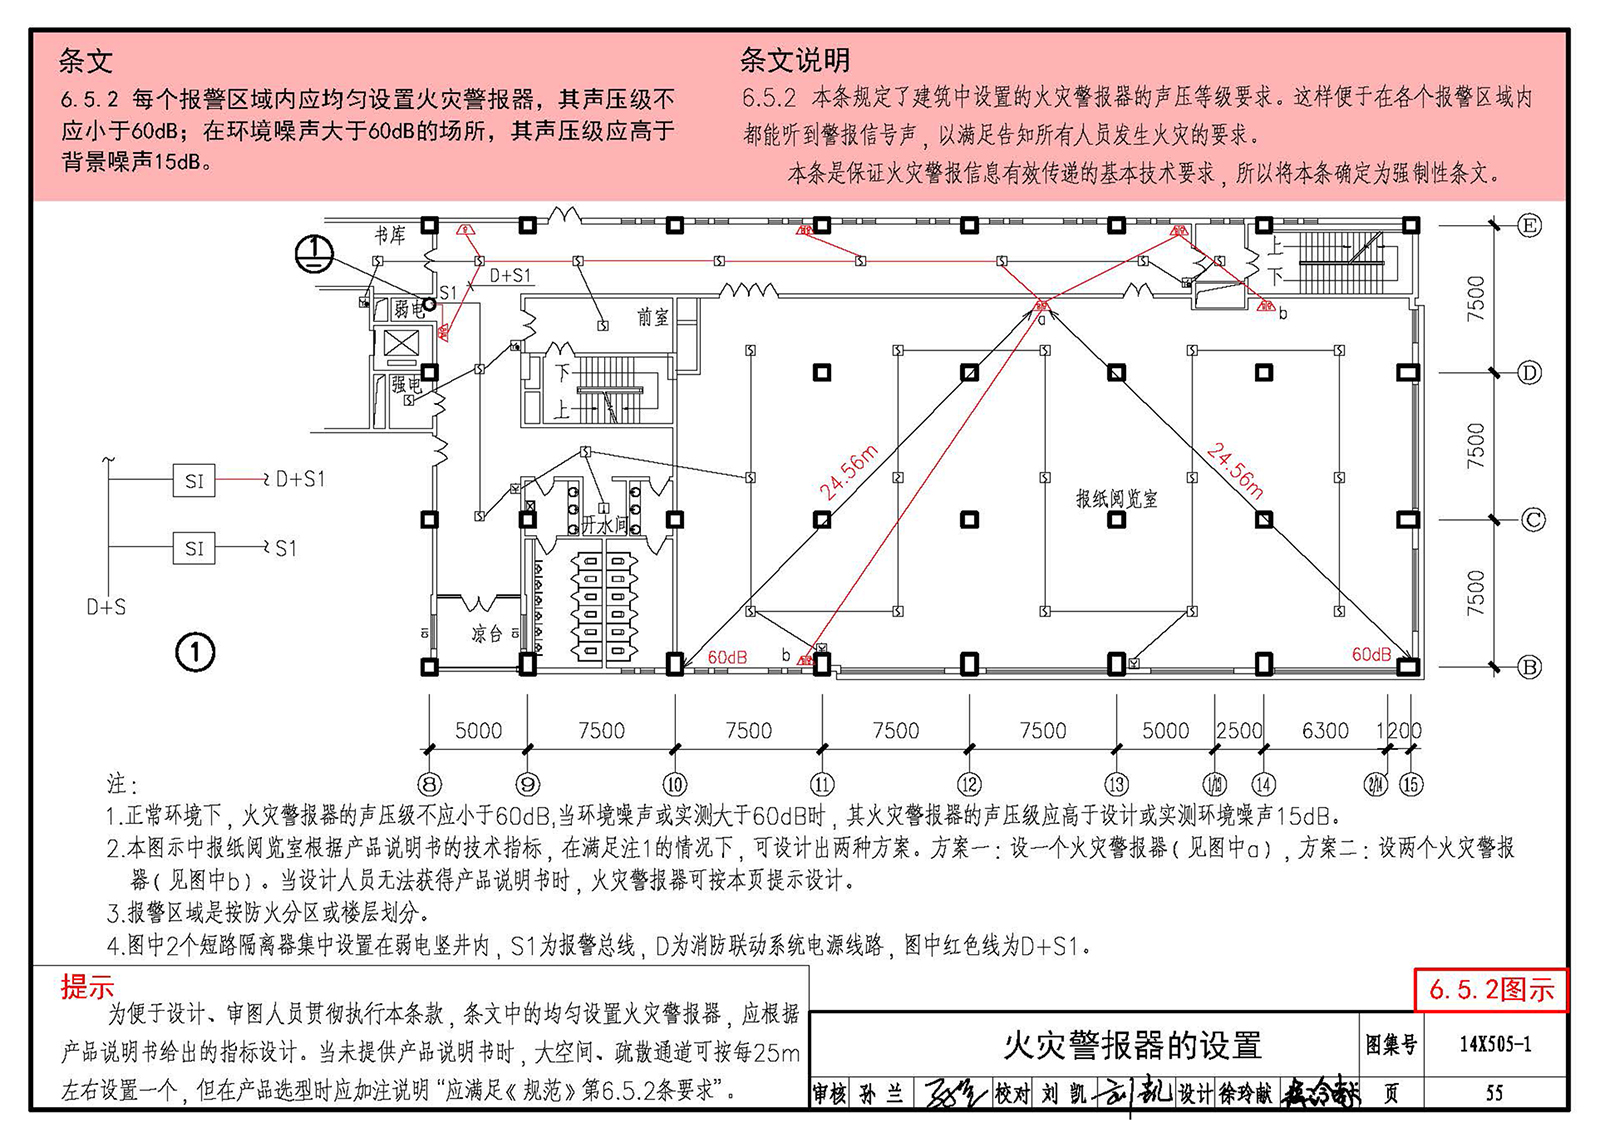 14X505-1:《火灾自动报警系统设计规范》图示